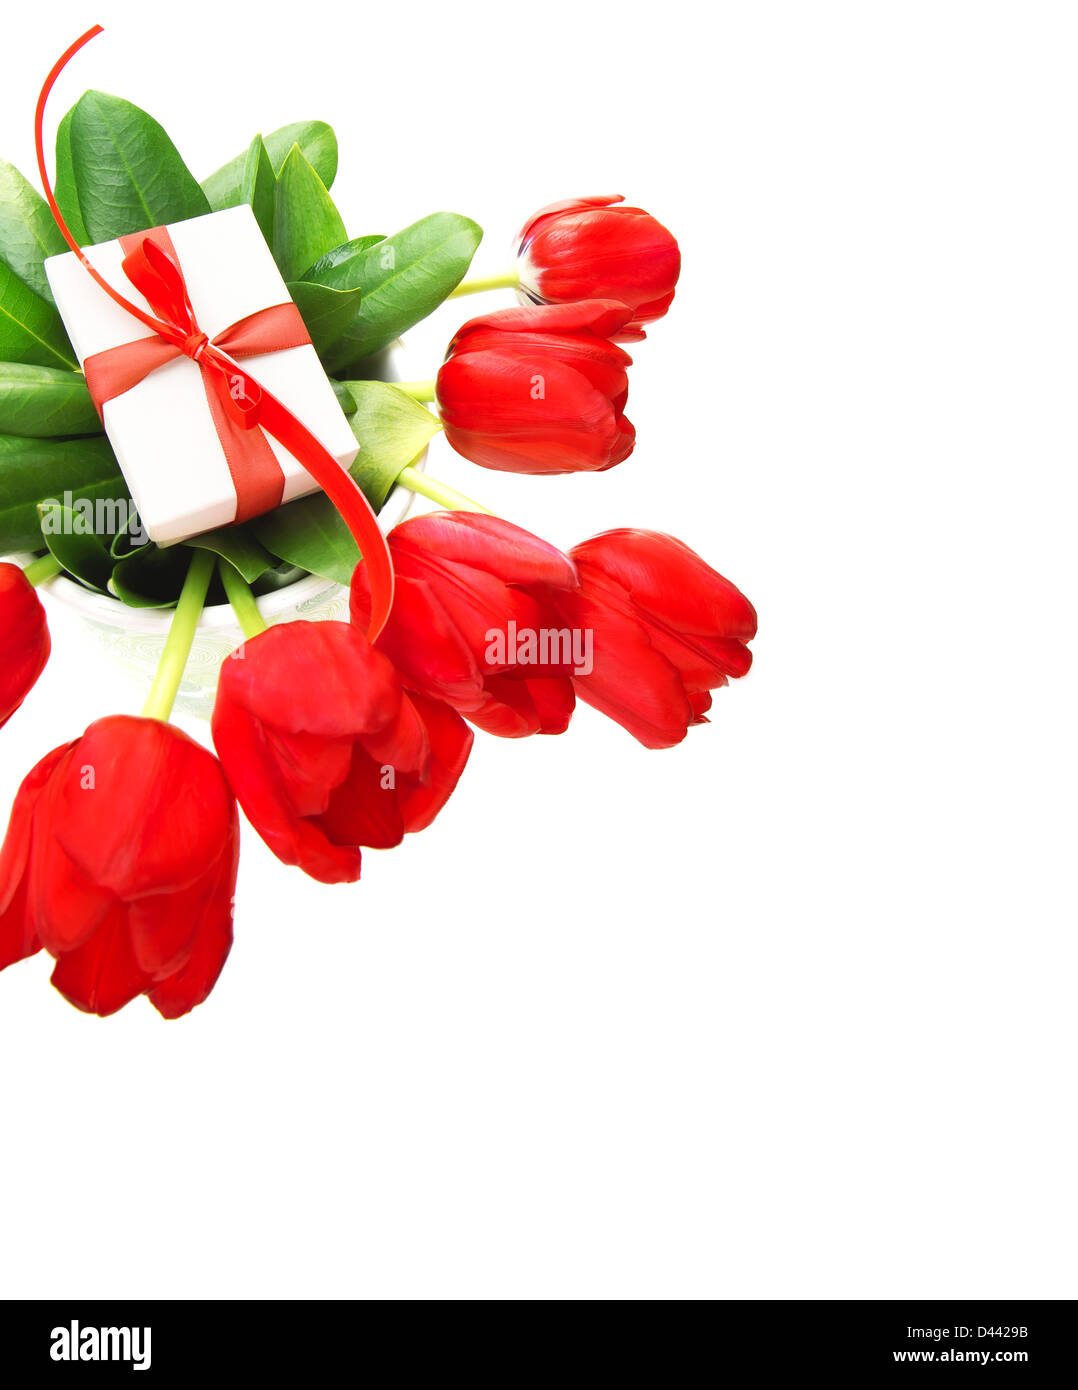 Bild von roten Tulpen Blumen und kleinen weißen Geschenkbox auf frischen grünen Blätter, romantische Stillleben für glückliche Mütter Tag isoliert Stockfoto